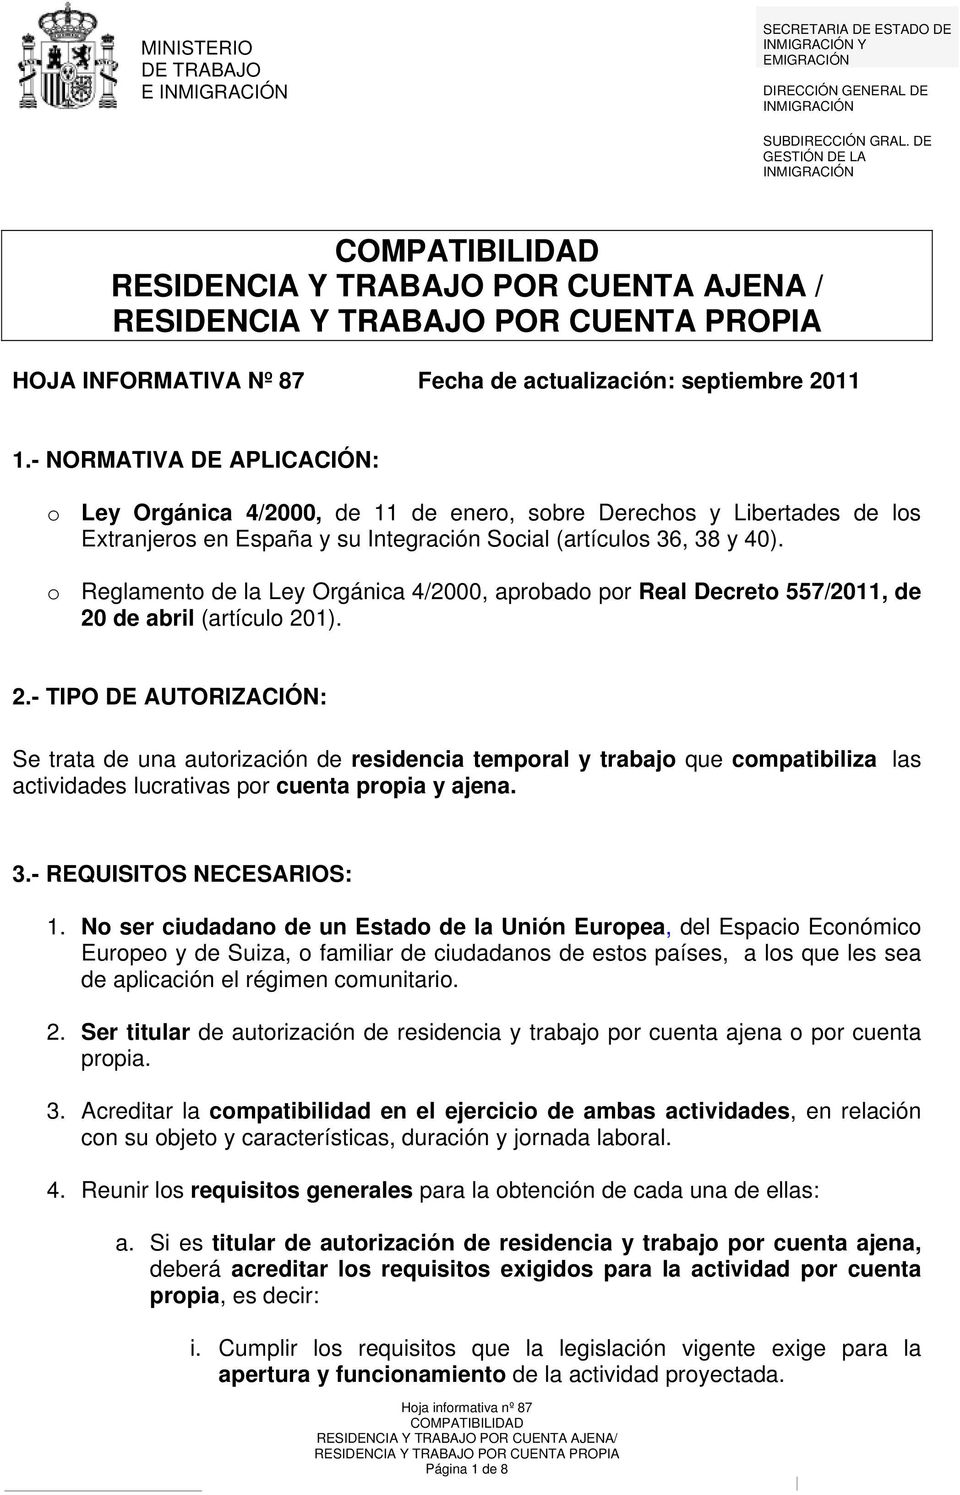 - NORMATIVA DE APLICACIÓN: o Ley Orgánica 4/2000, de 11 de enero, sobre Derechos y Libertades de los Extranjeros en España y su Integración Social (artículos 36, 38 y 40).